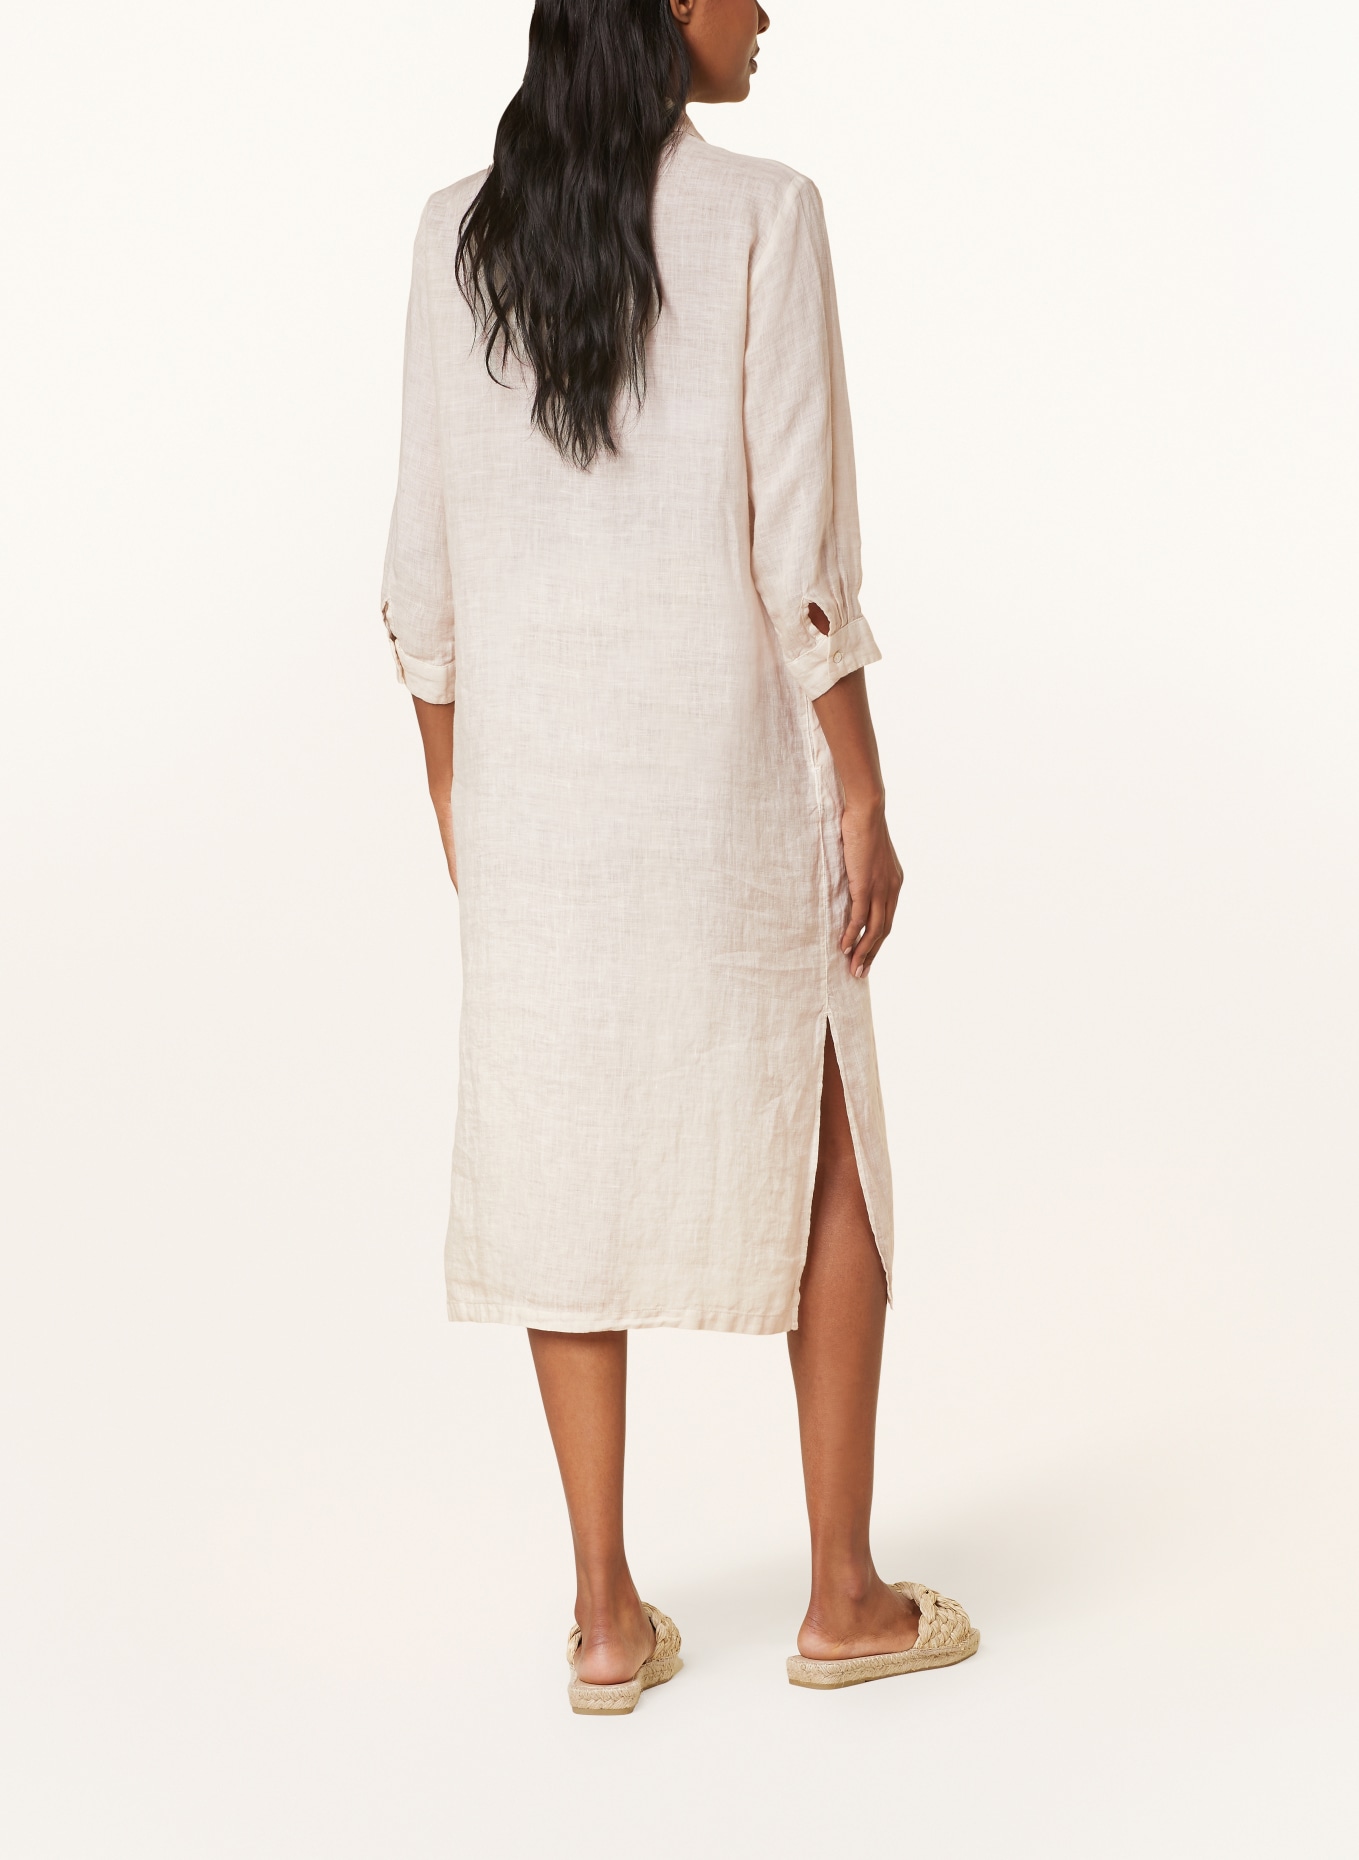 120%lino Beach dress made of linen, Color: CREAM (Image 3)